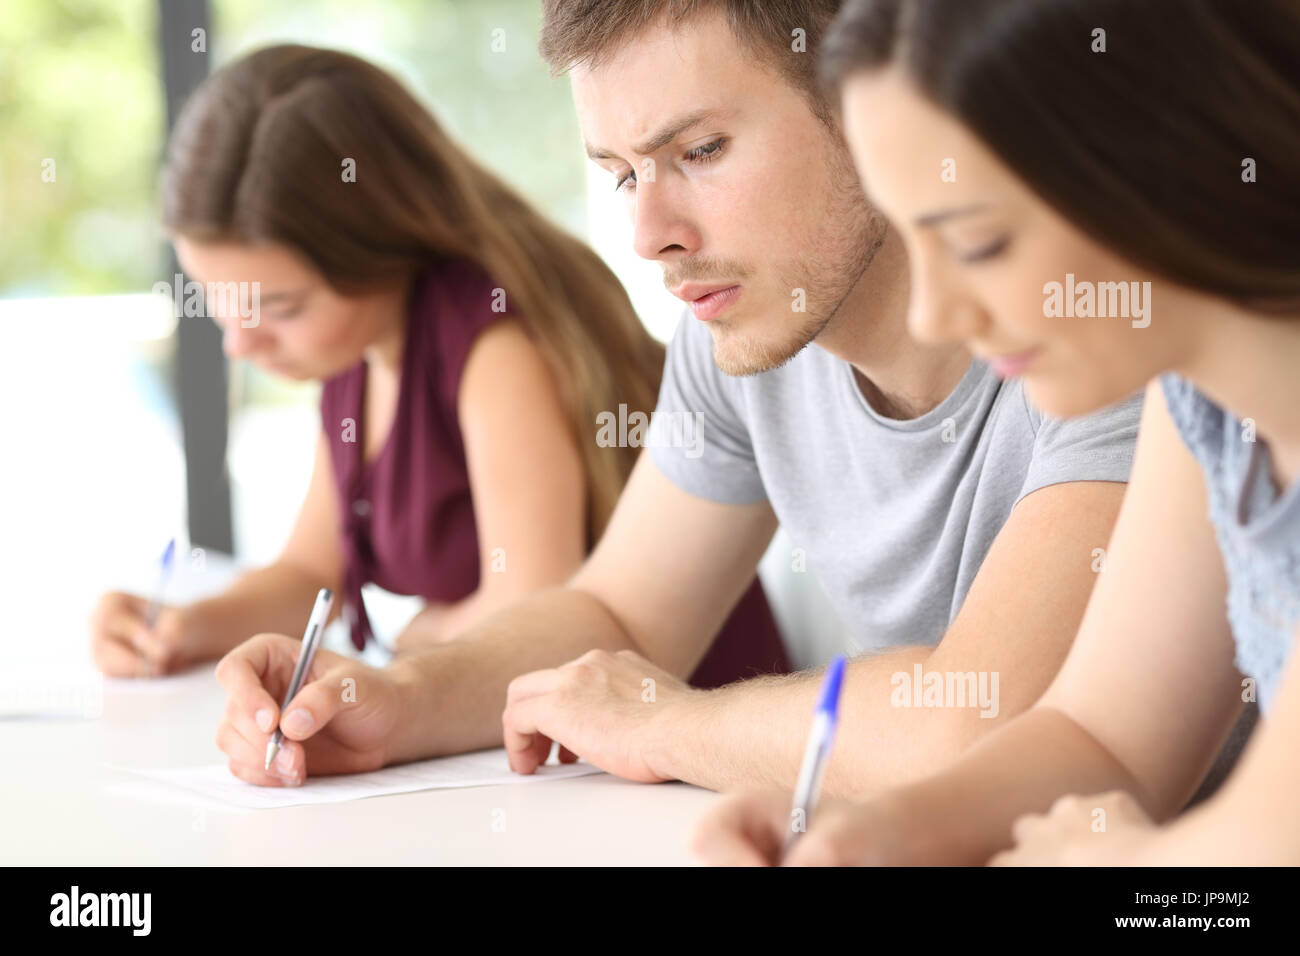 Vista lateral de un estudiante intenta copiar un examen de una compañera de clase en un aula. Foto de stock